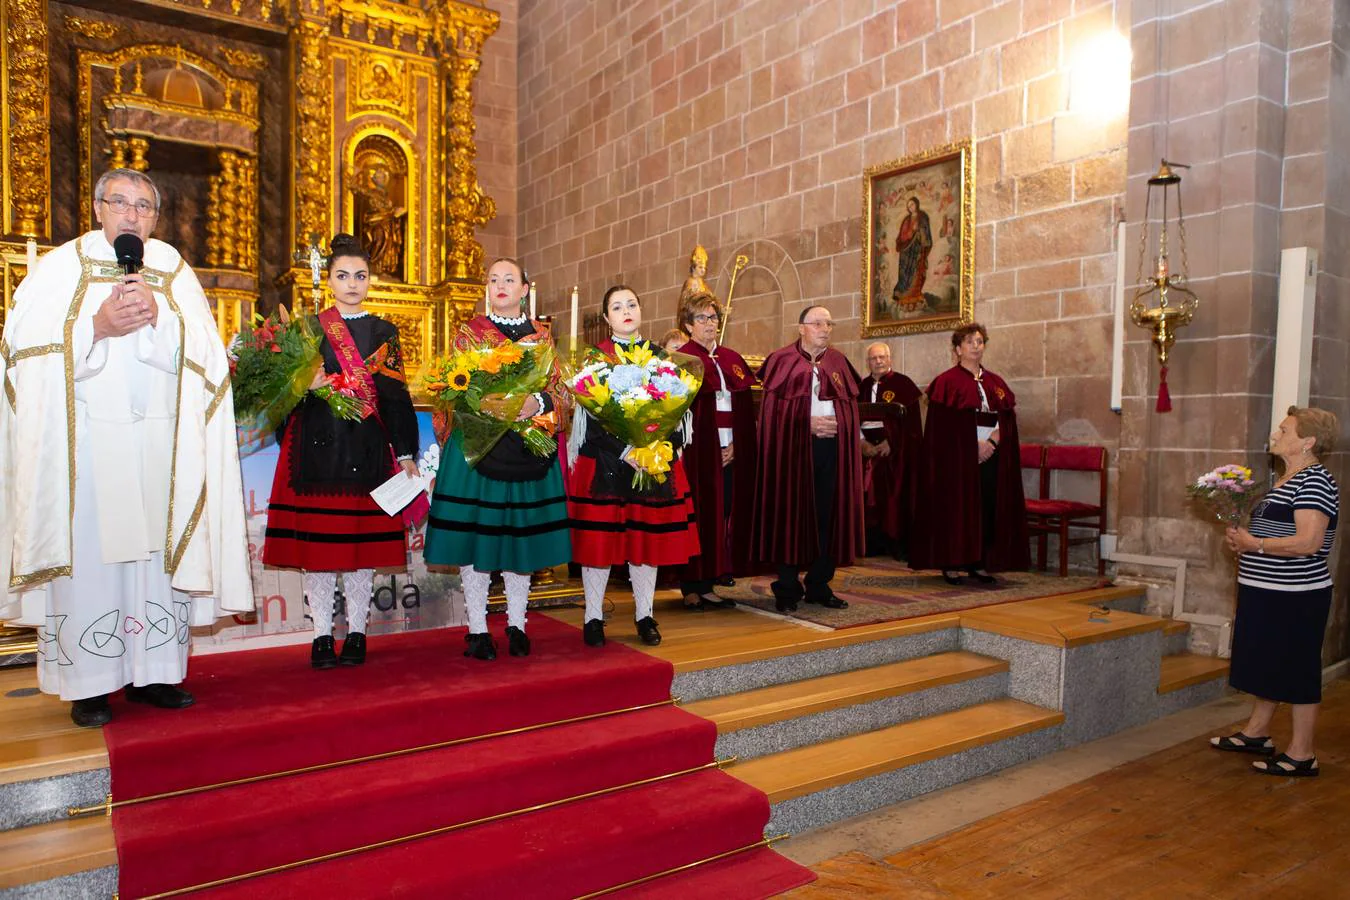 Lardero abrió este jueves ocho días de fiestas en honor a San Pedro y San Marcial